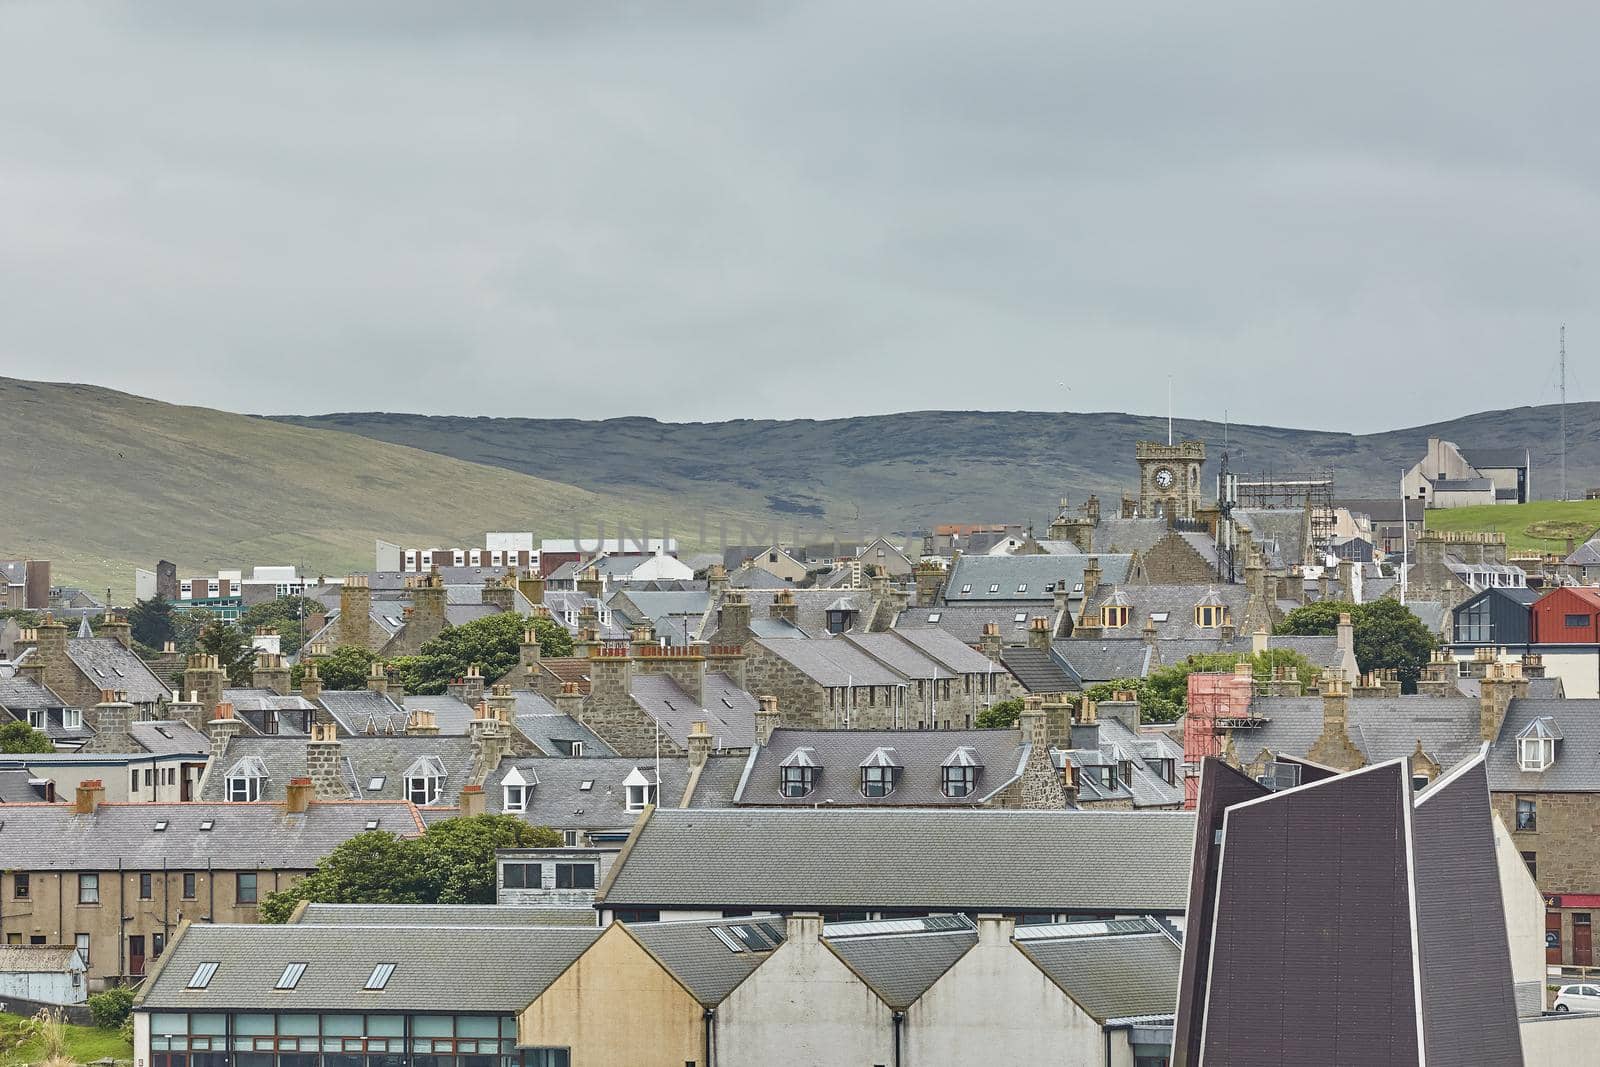 Lerwick town center under cloudy sky, Lerwick, Shetland Islands, Scotland, United Kingdom. by wondry